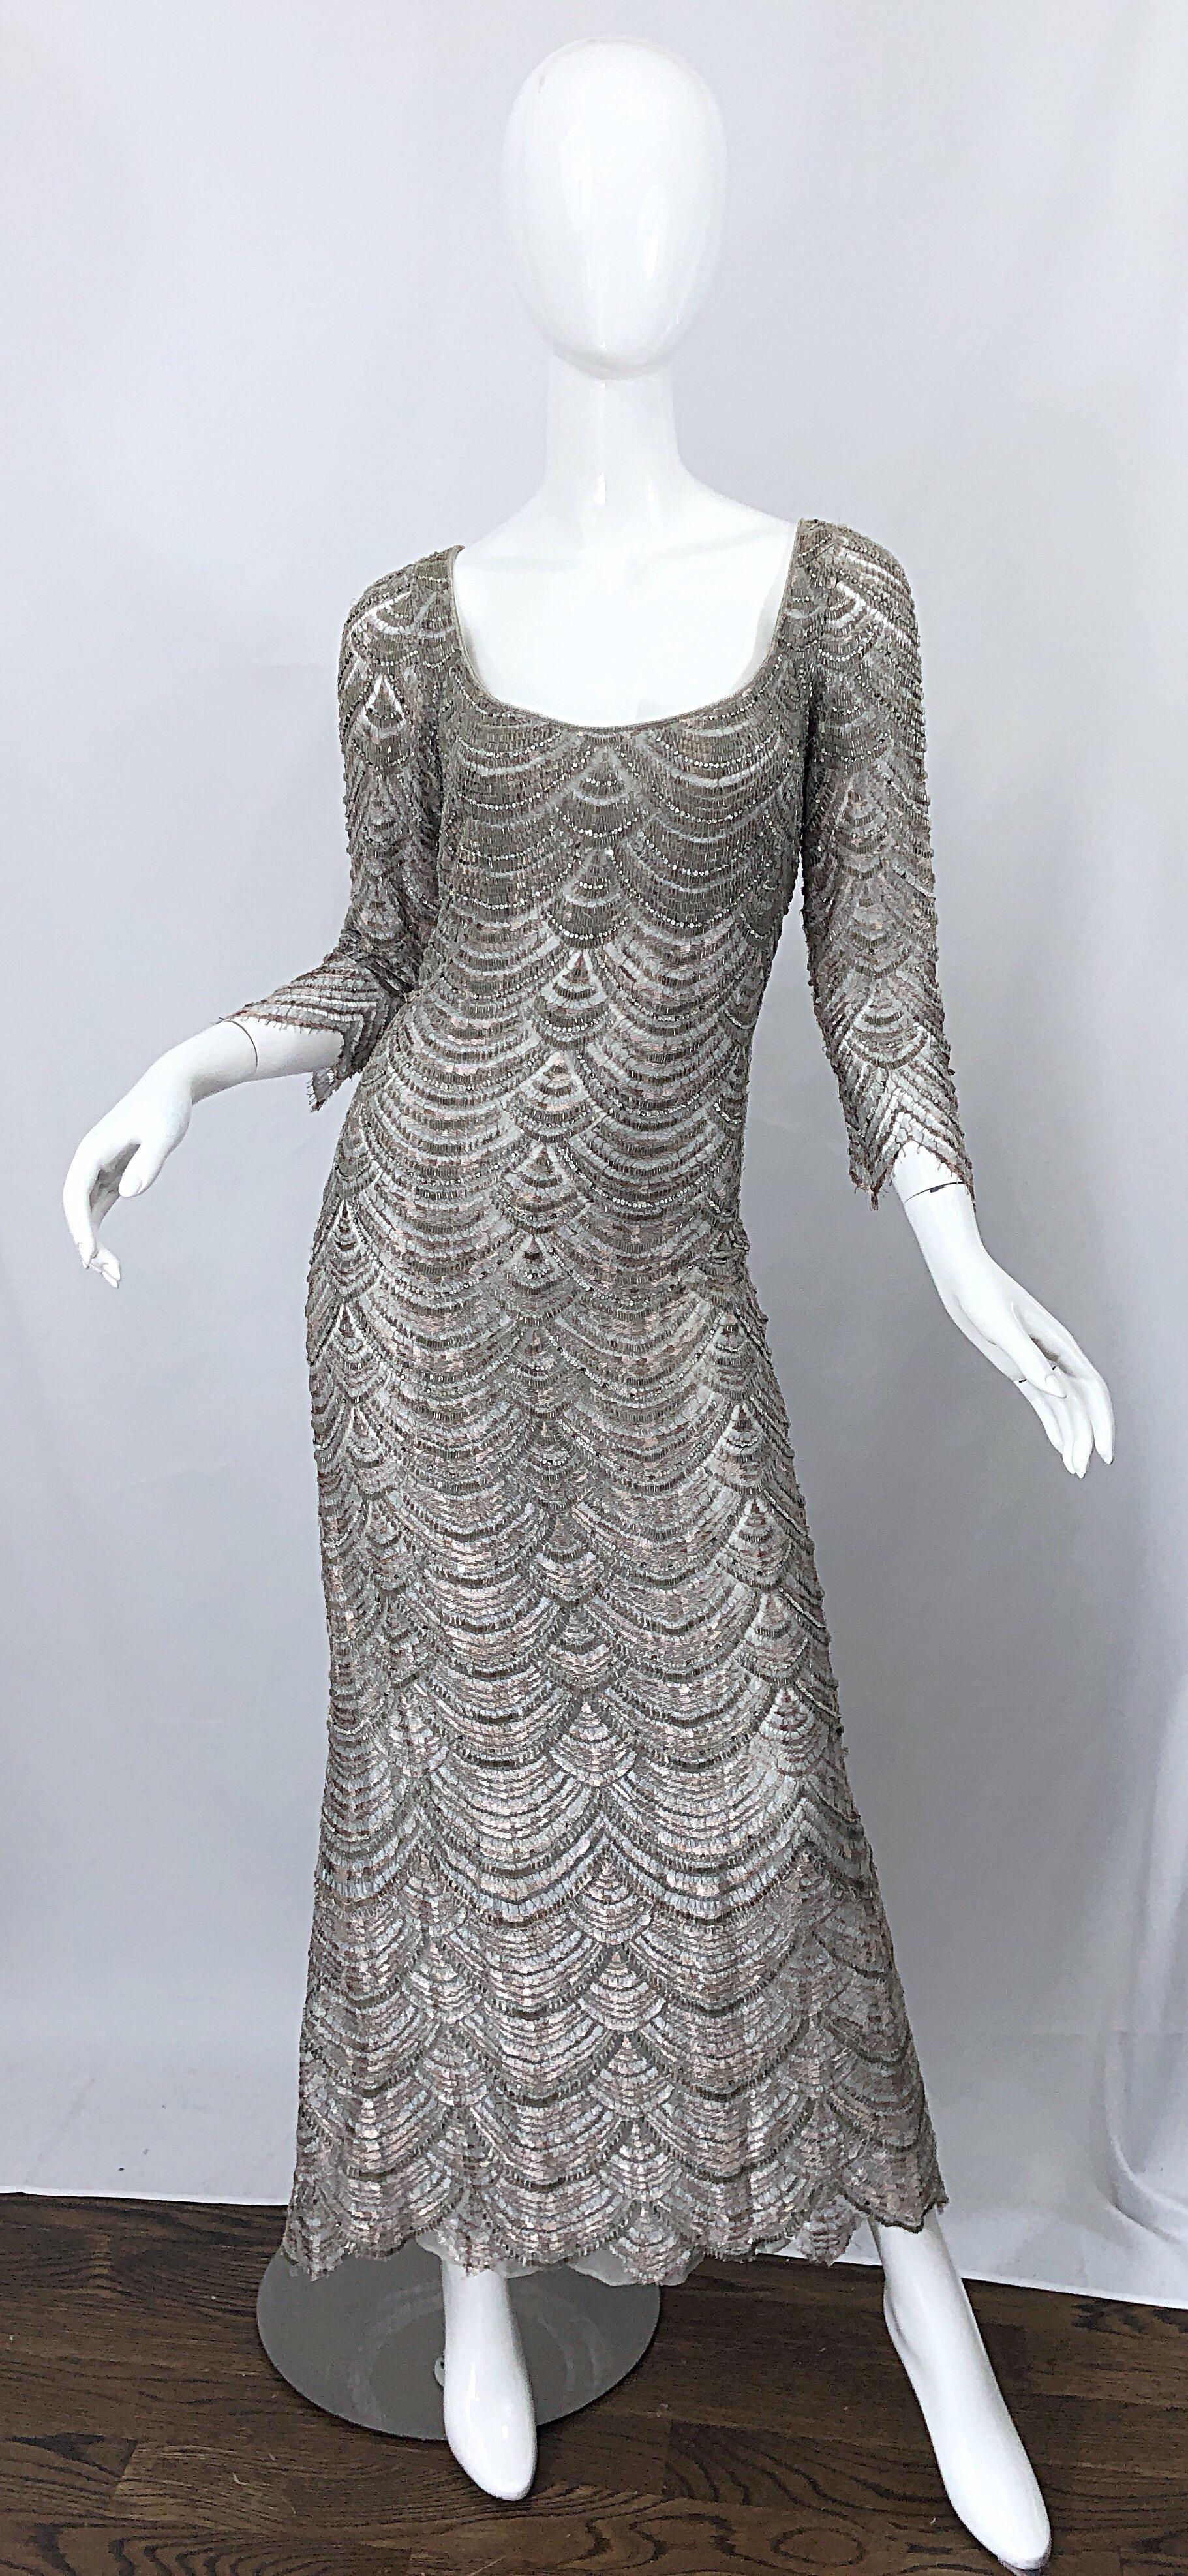 Magnifique robe de soirée BADGLEY MISCHKA vintage des années 1990, taille 12, grise, entièrement perlée + strass, style déco ! Manches 3/4 élégantes, corsage ajusté et jupe souple. Détail de la broderie au crochet à la main avec des milliers de